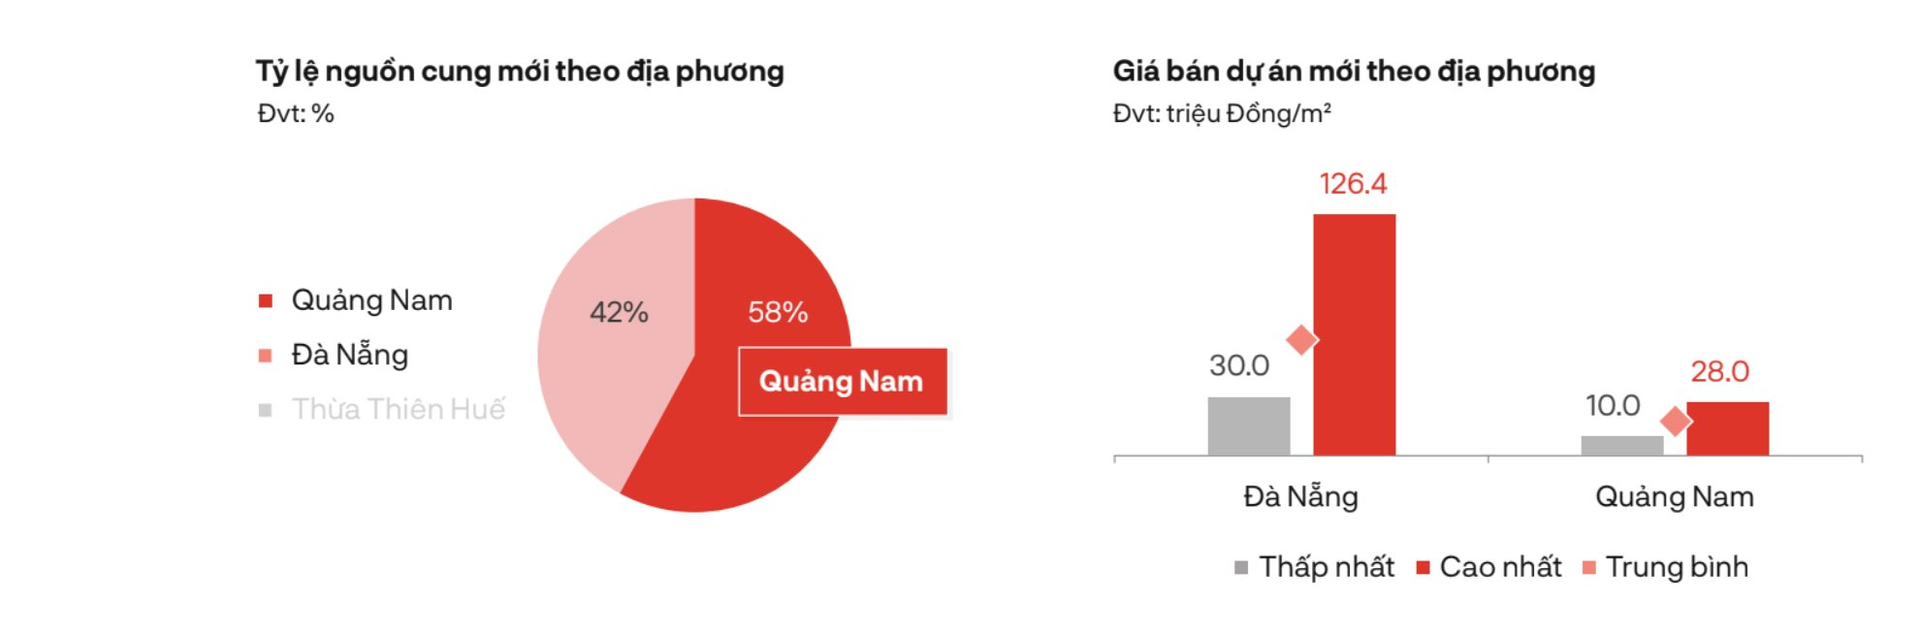 Một phân khúc BĐS tại Đà Nẵng đạt mức giá sơ cấp gần 130 triệu đồng/m2, xuất hiện nhà đầu tư “cá mập” vào gom hàng trước Tết - Ảnh 1.